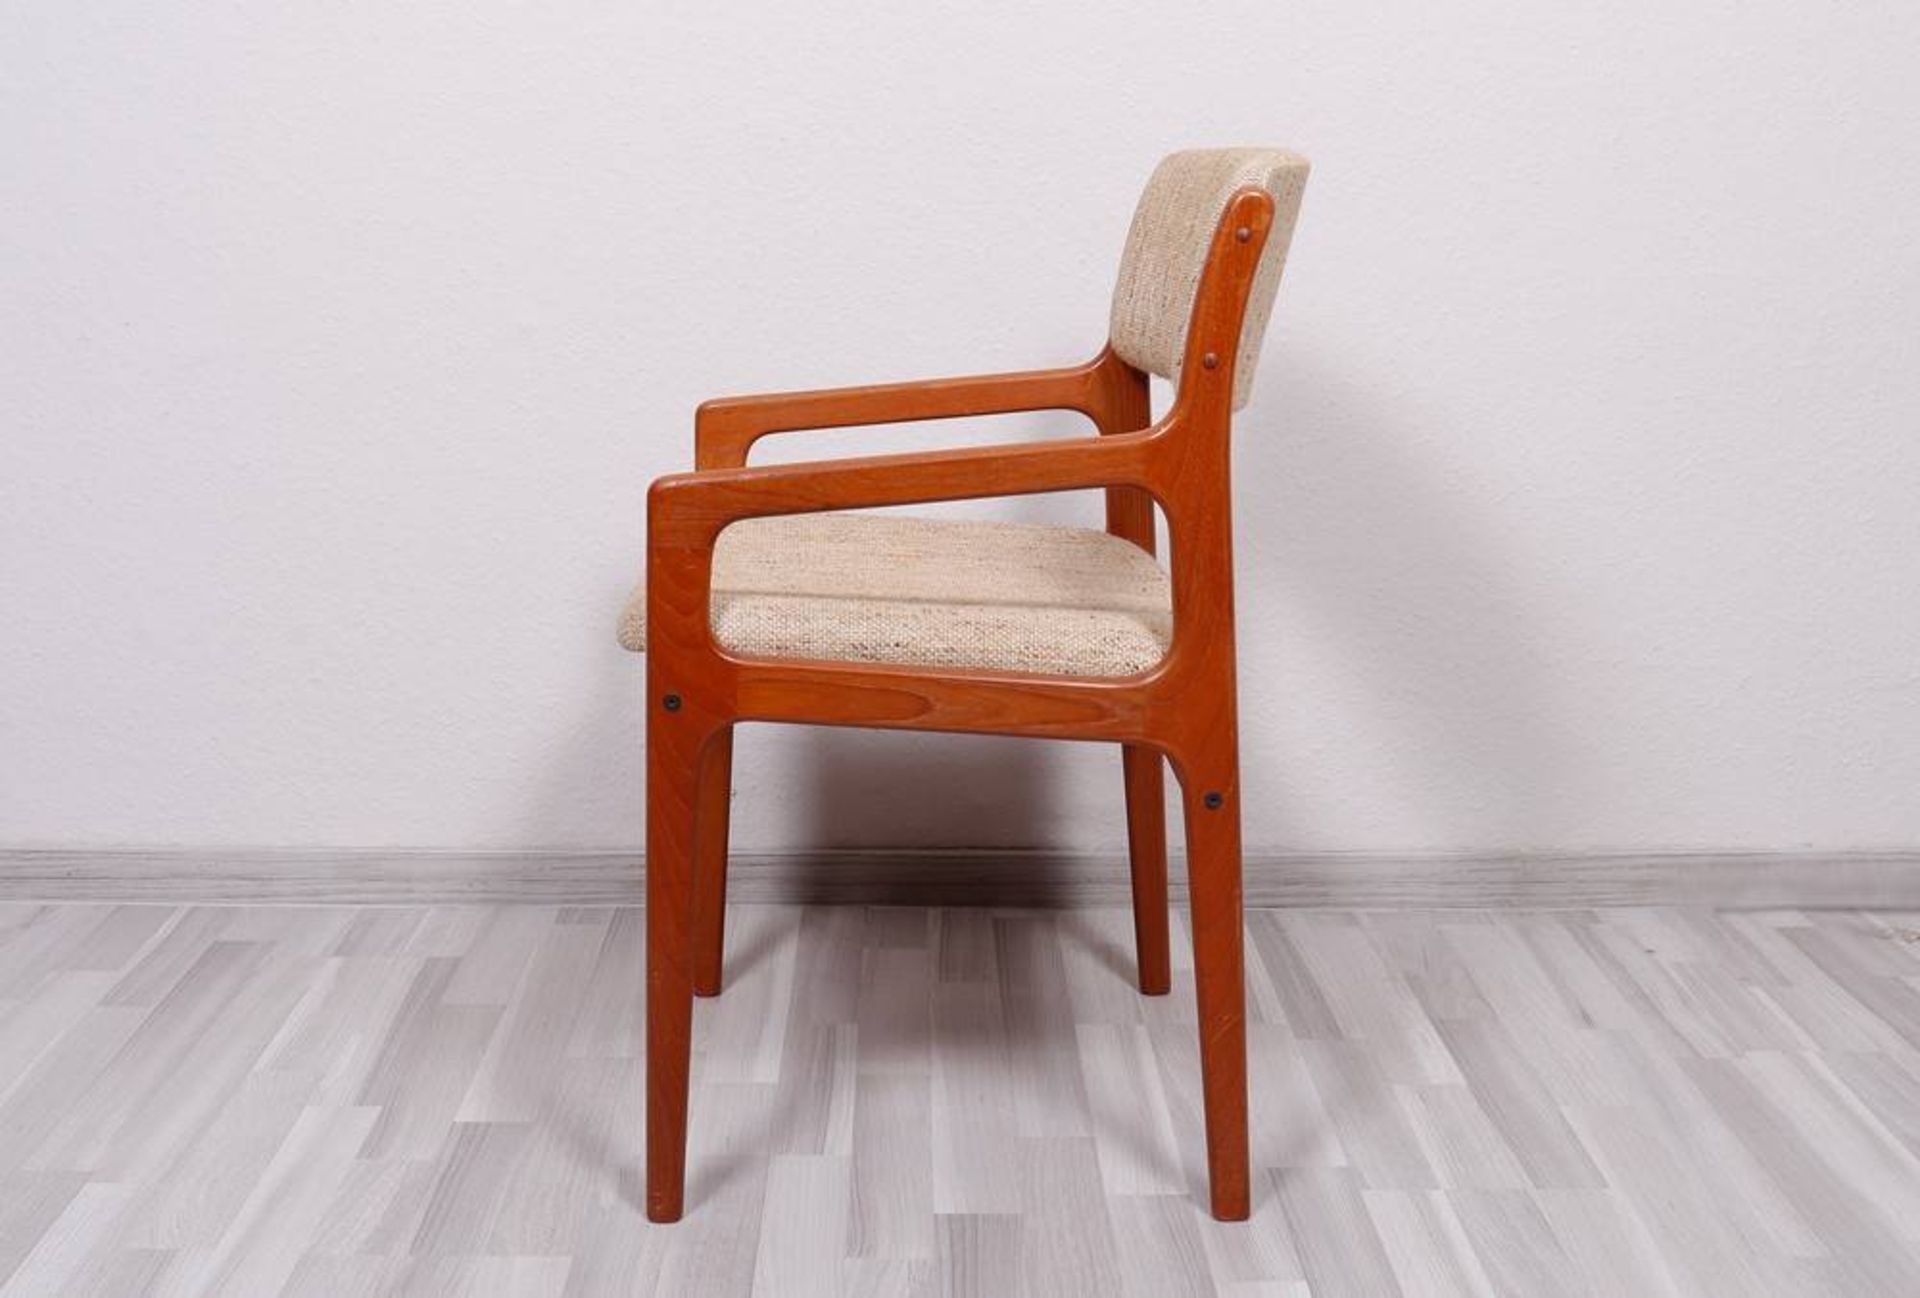 6 armchairs, Den Blaa factory, Glostrup, Denmark, c. 1960 - Image 3 of 4